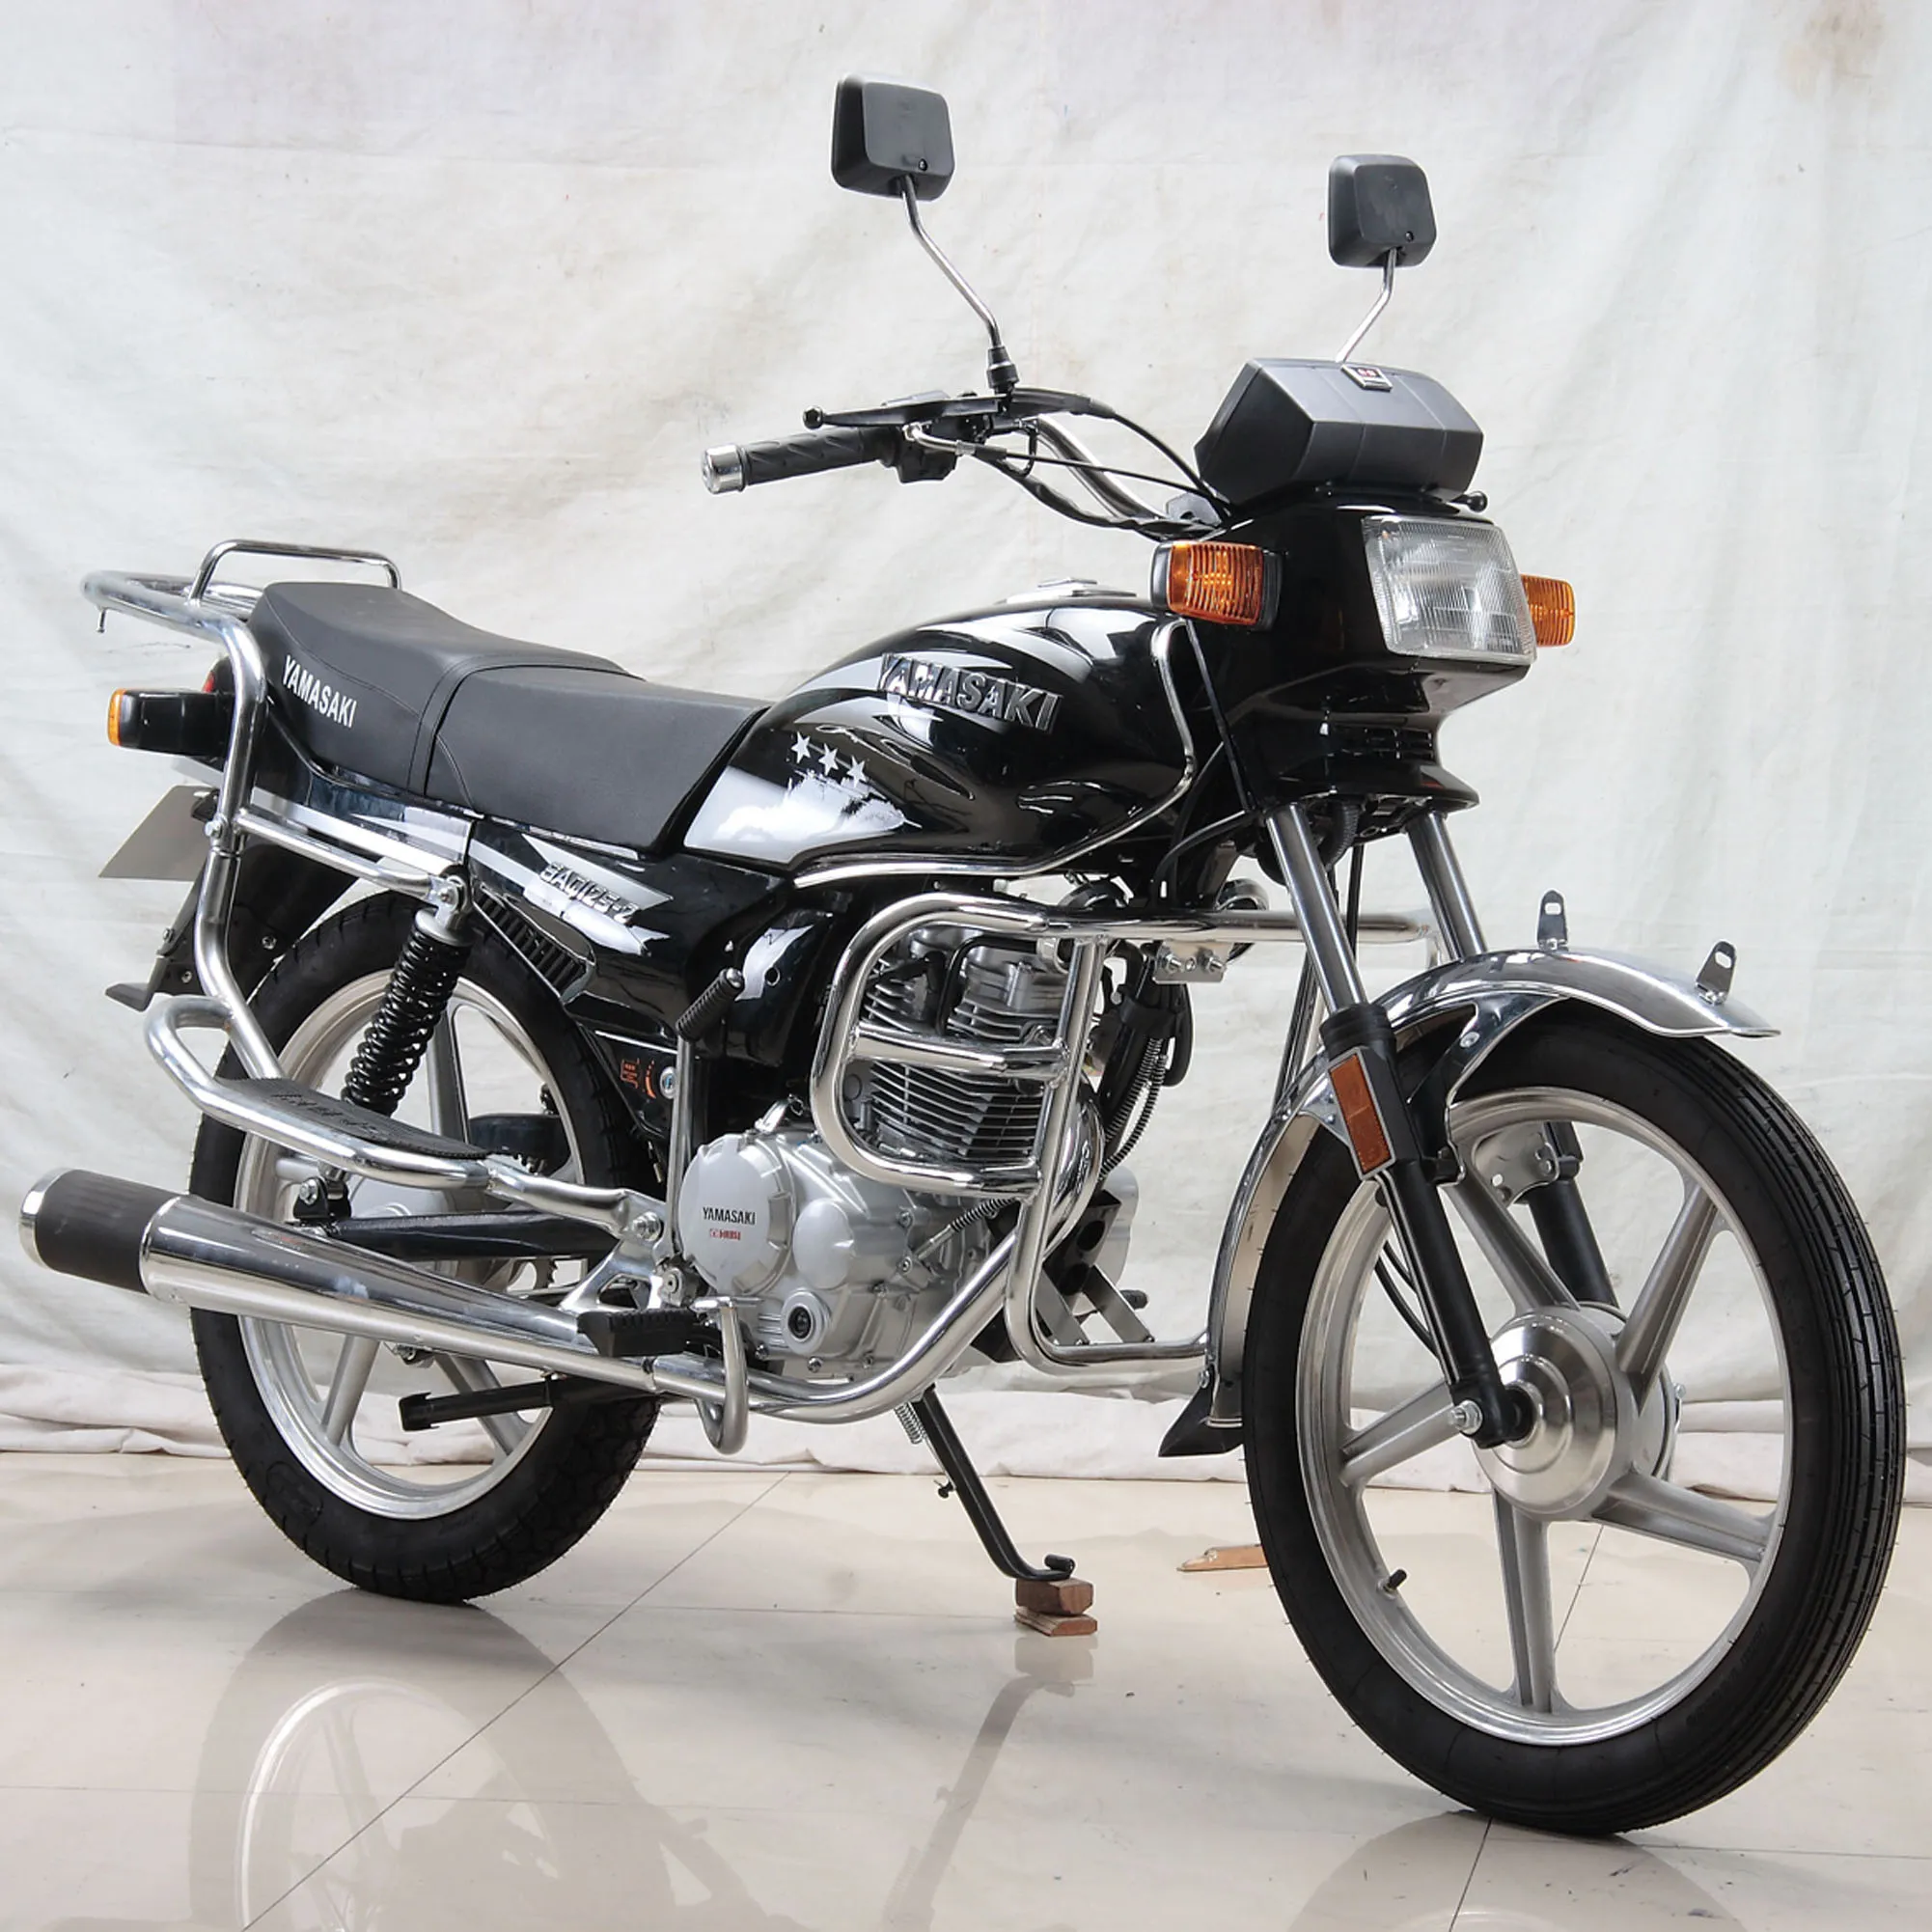 Sıcak satış 125cc sokak yakıtlı motosiklet ucuz model